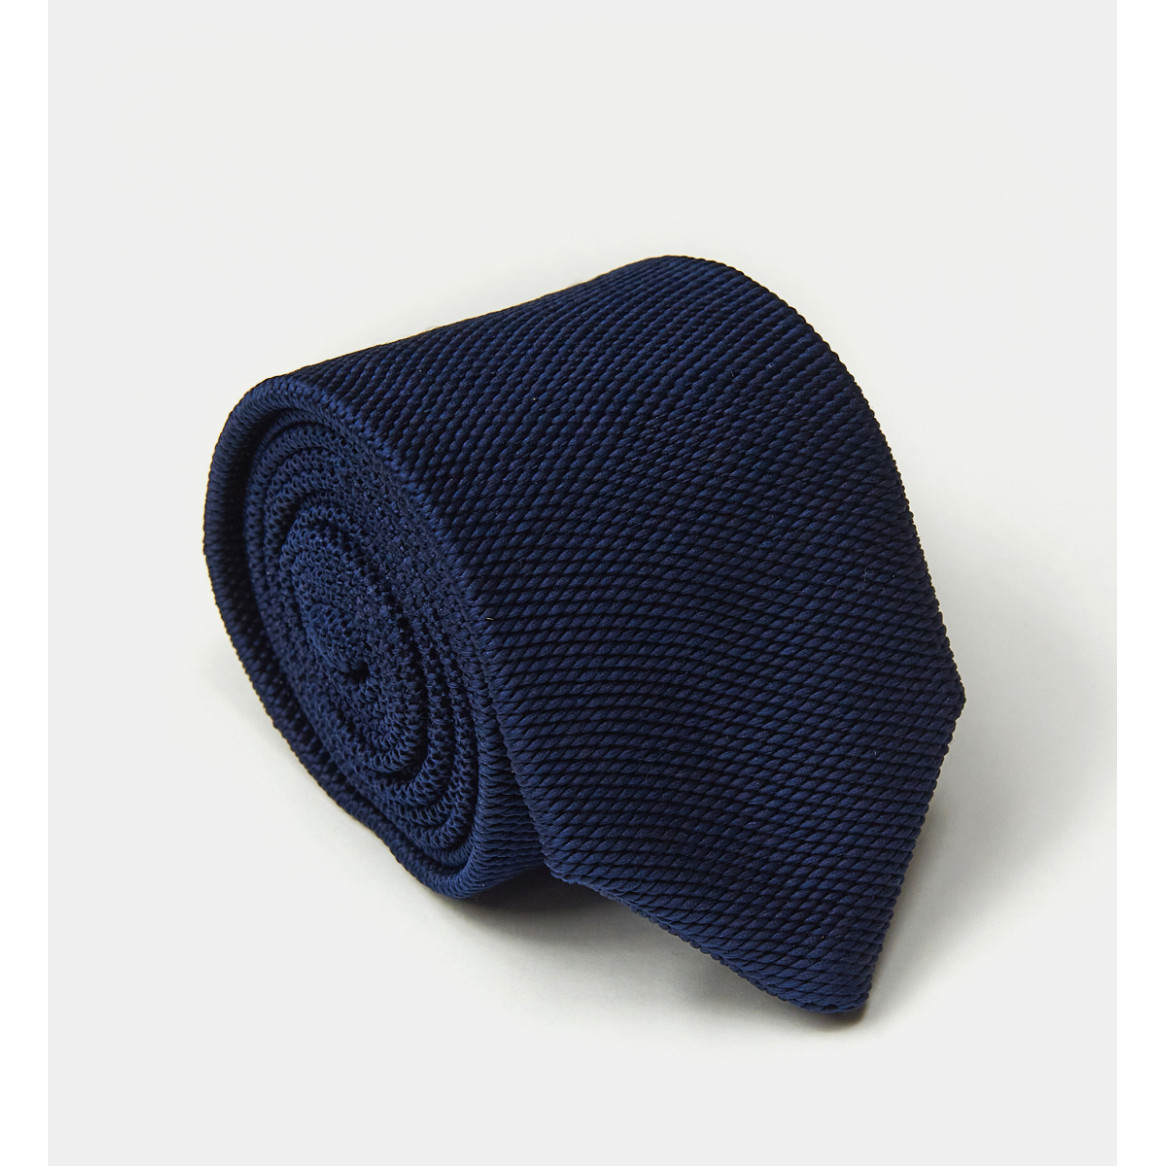 Cravate marine en tricot